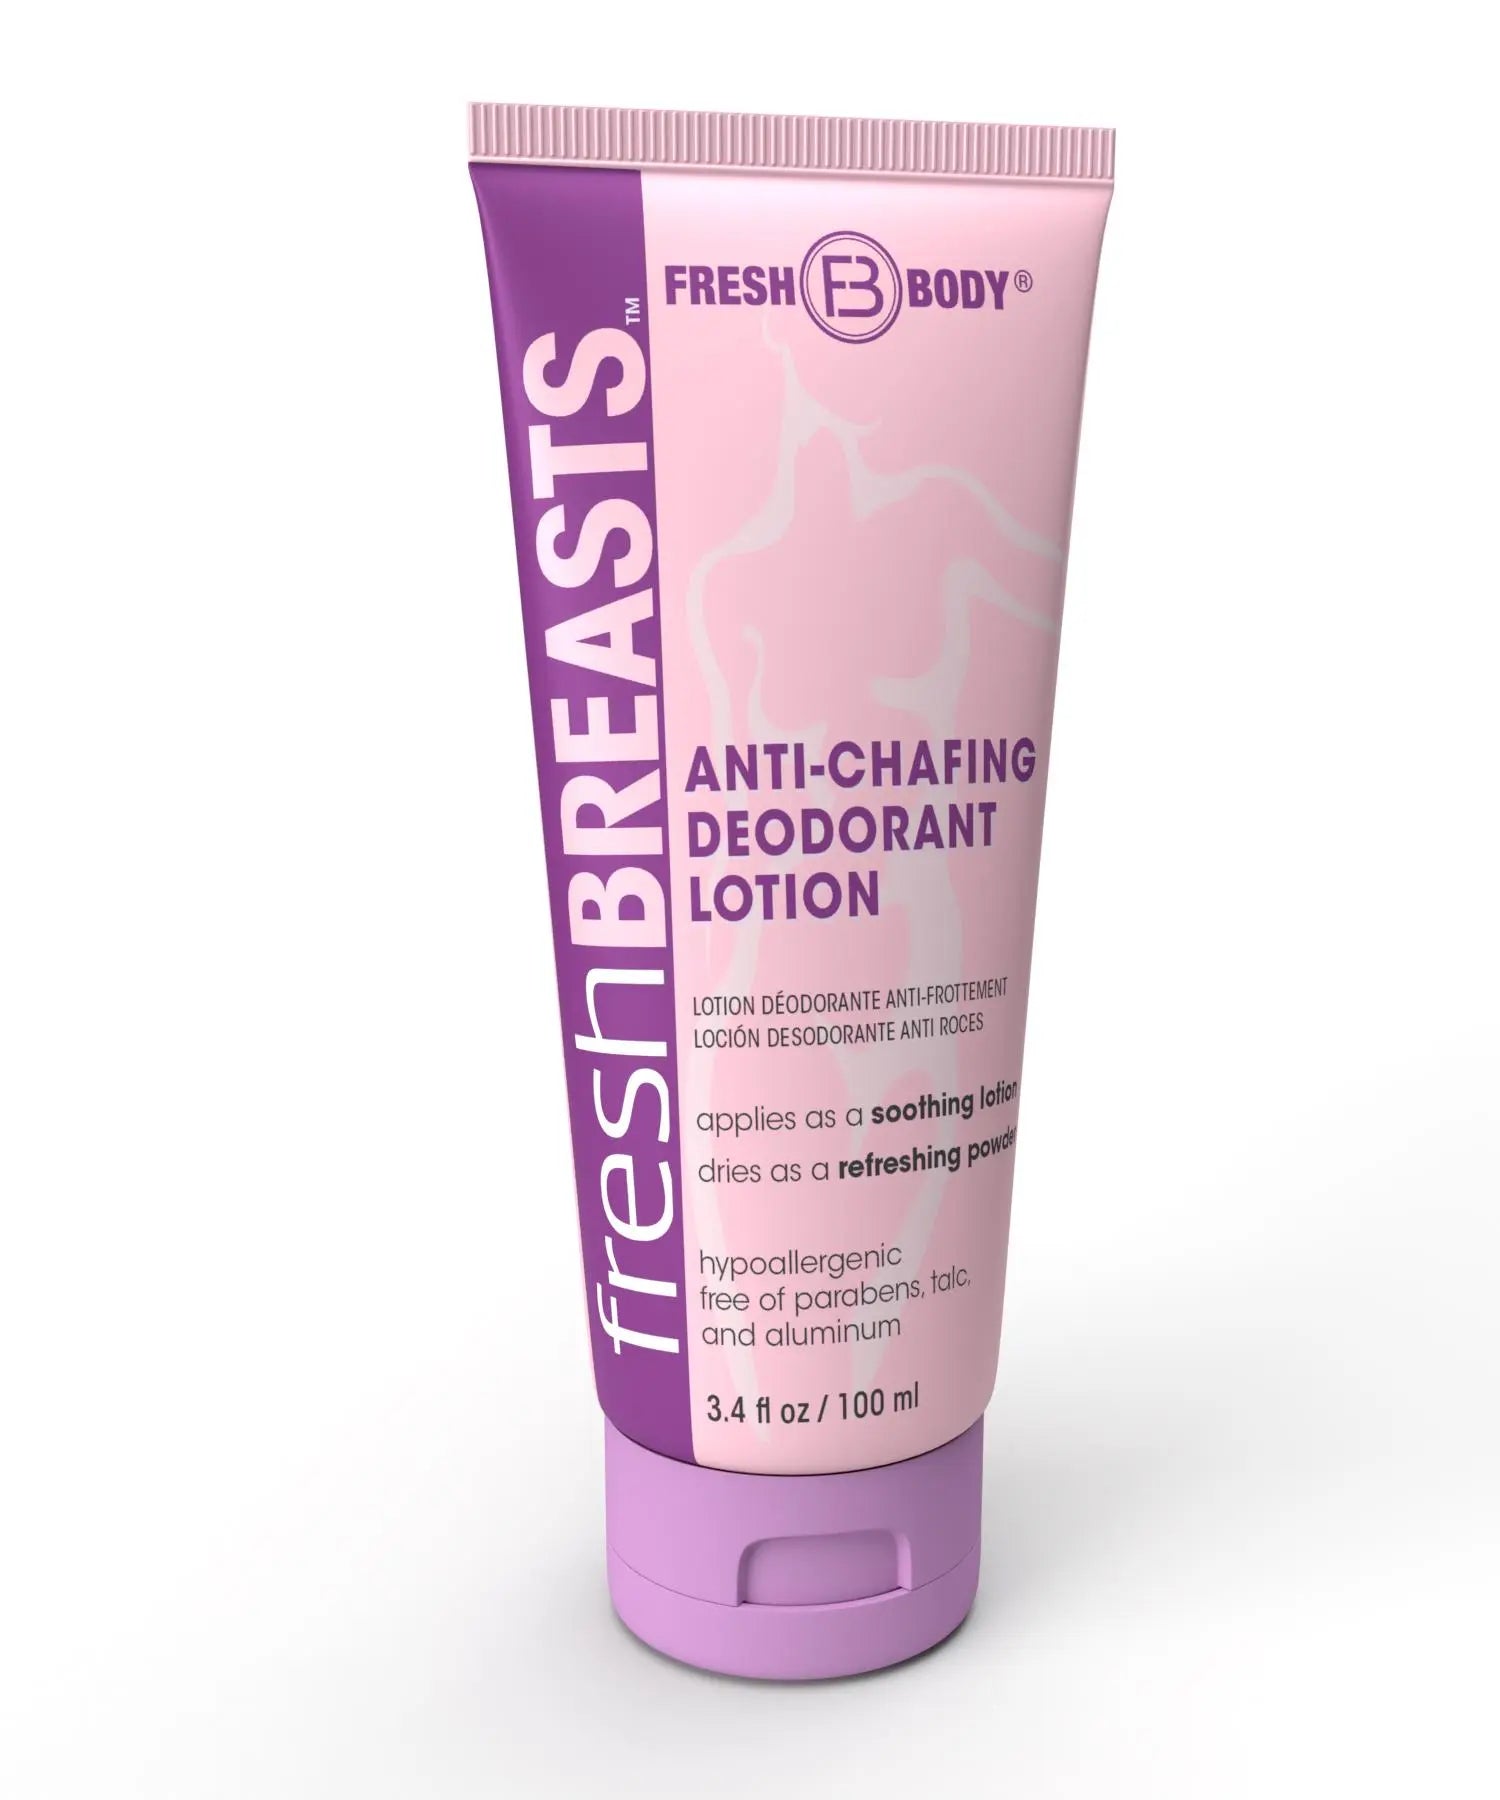  Fresh Body FB Fresh Breasts Anti Chafing Deodorant